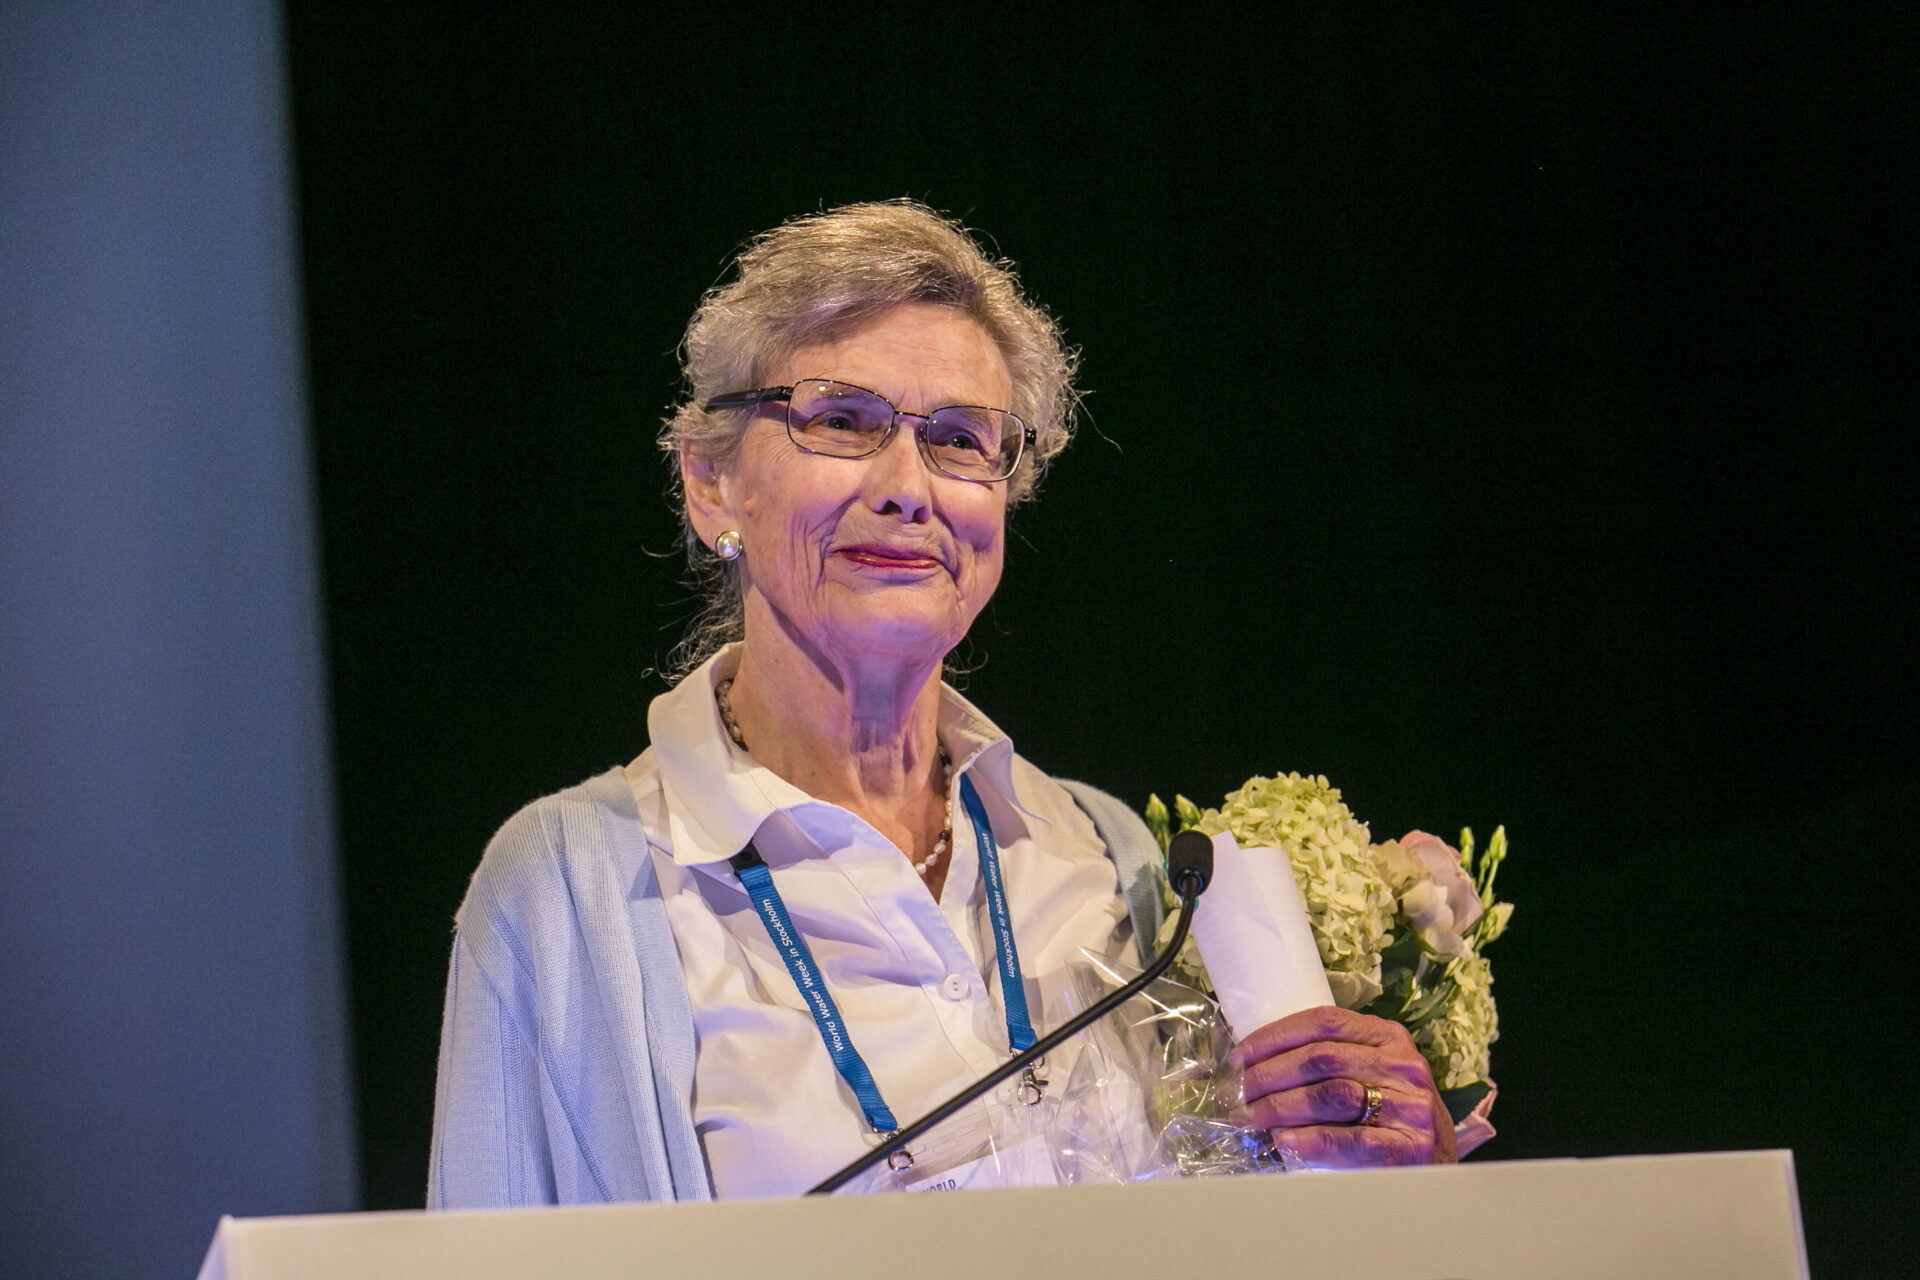 Professor Malin Flakenmark holding a flower bouquet after a talk at World Water Week 2015